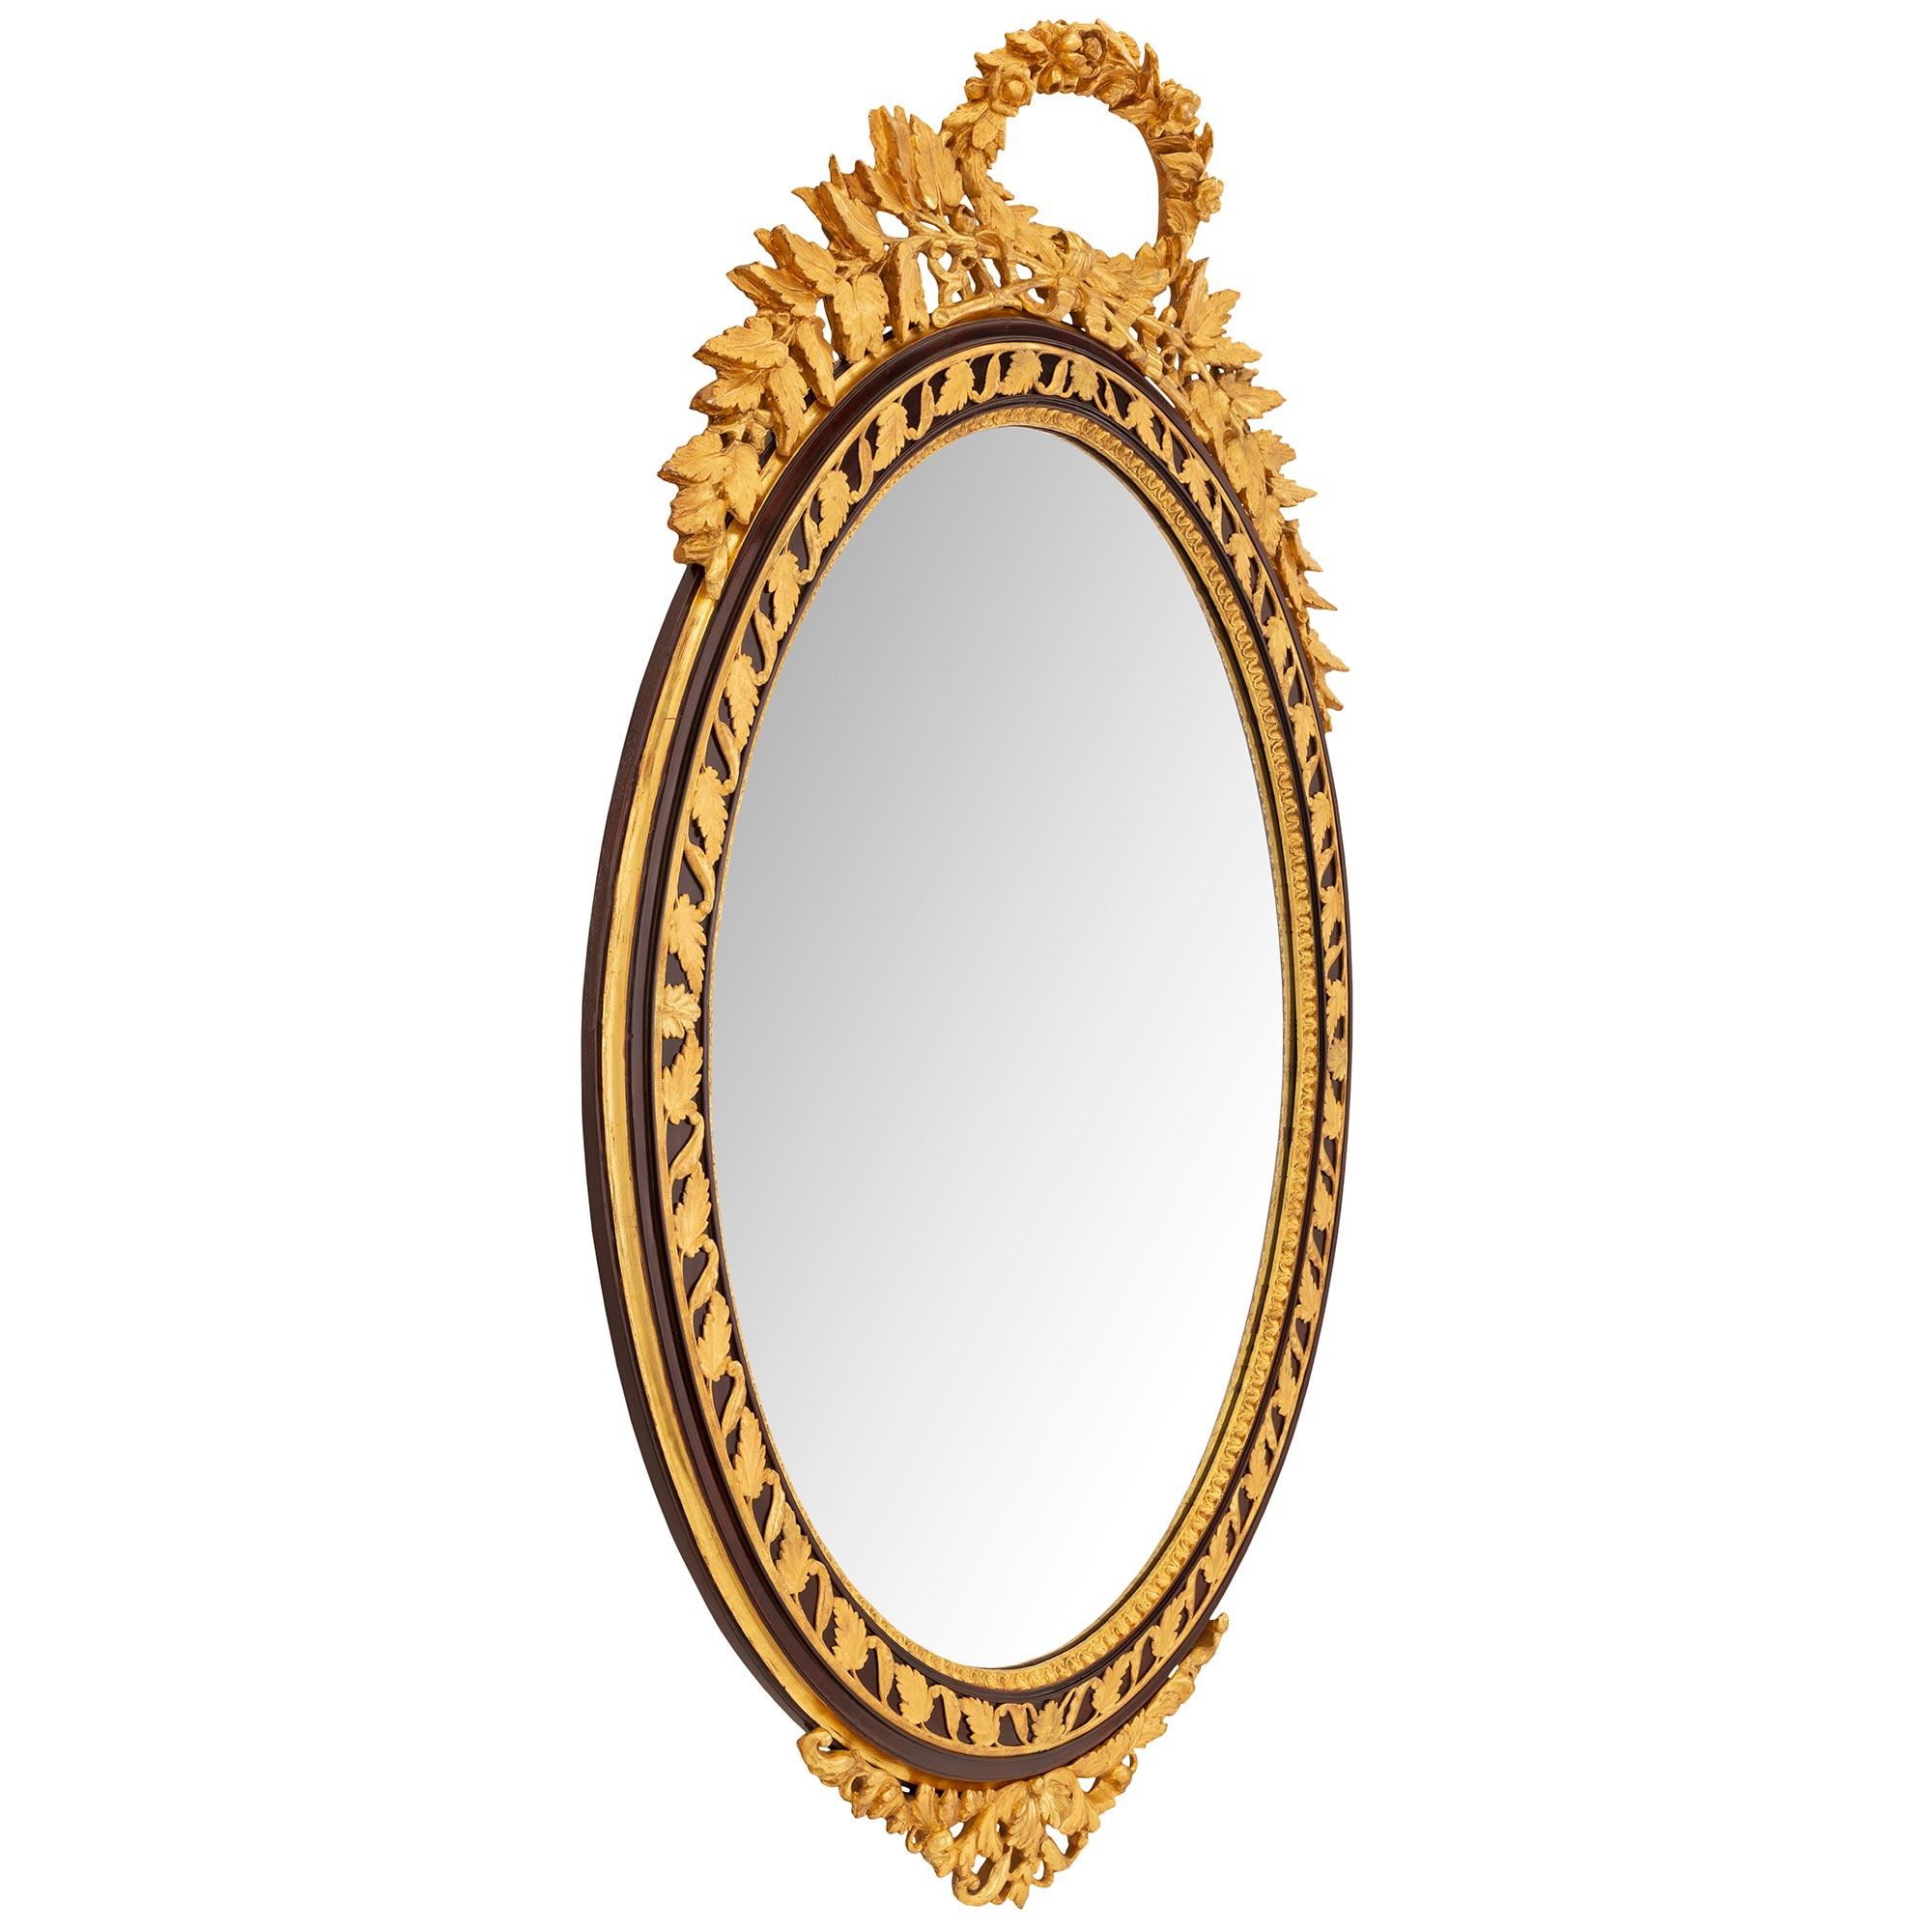 Une impressionnante et très élégante paire de miroirs italiens du 19ème siècle, de style Louis XVI, en bois polychrome et doré. Chaque miroir ovale a conservé ses plaques d'origine, dans un étonnant cadre polychrome moucheté avec une belle bande